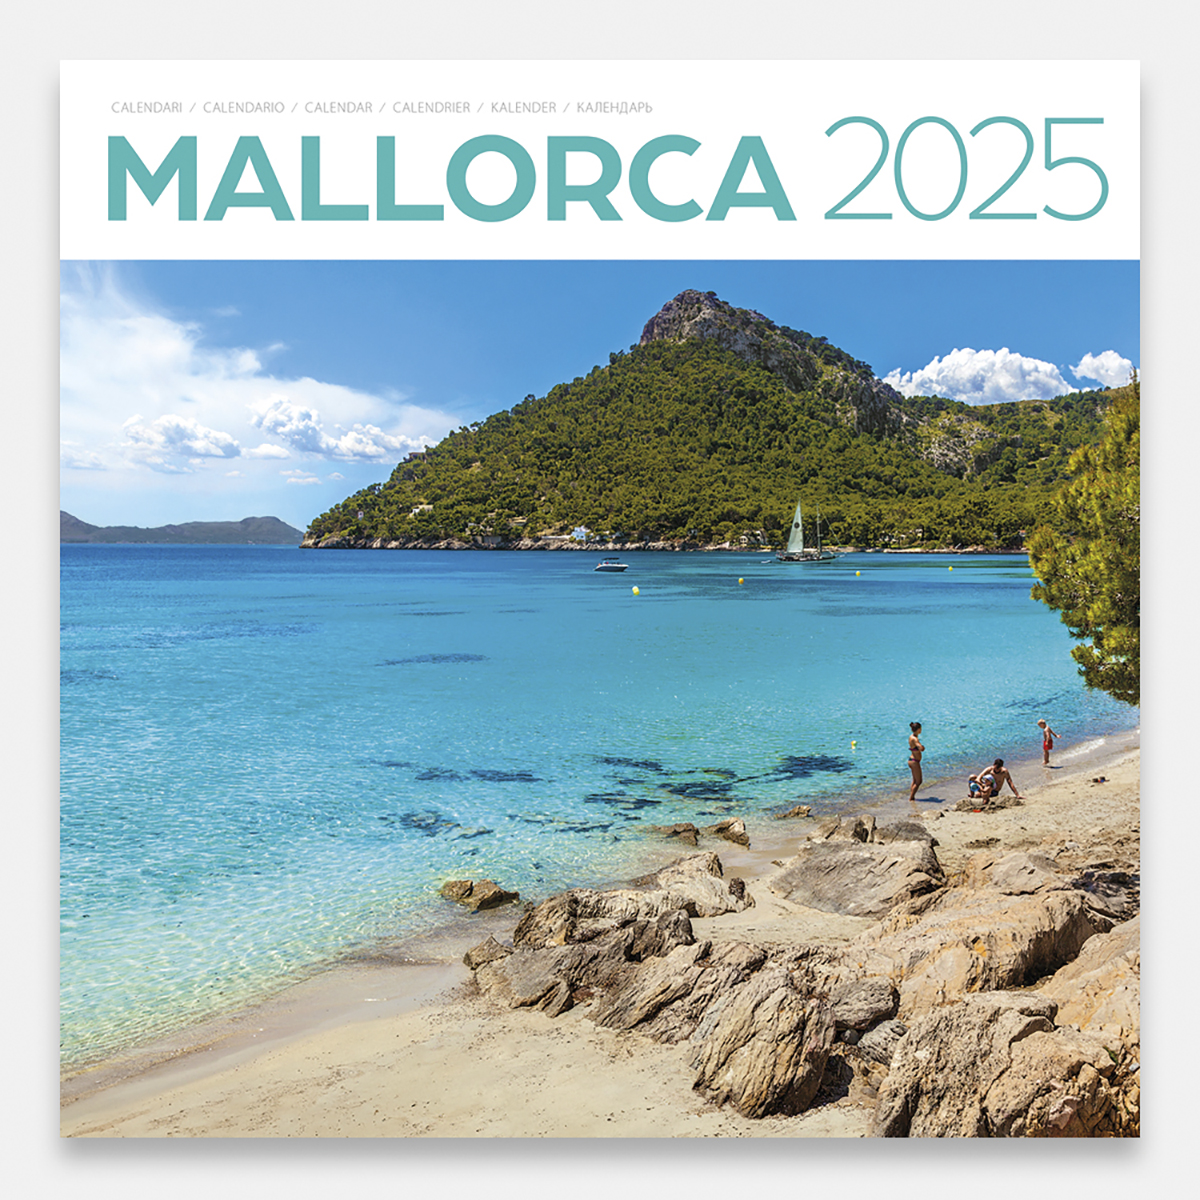 Calendario 2025 Mallorca 25mag1 calendario pared 2025 mallorca